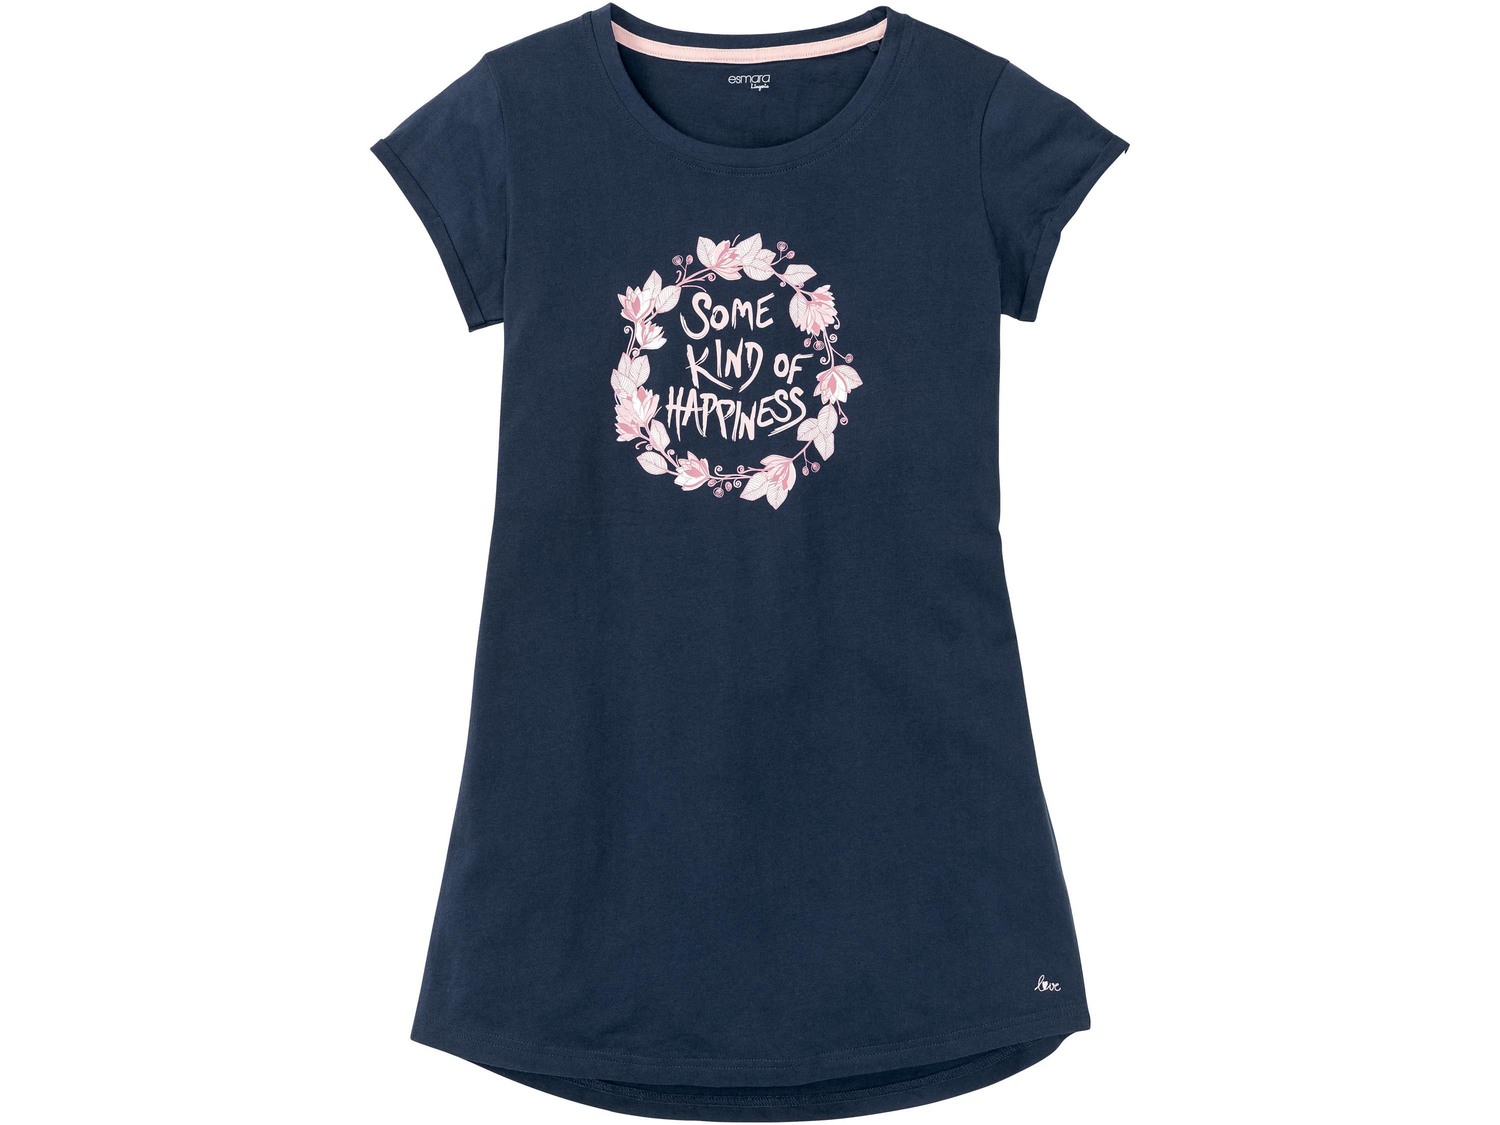 Maxi t-shirt da notte per donna Esmara Lingerie, prezzo 4.99 &#8364;  
-  Puro cotone